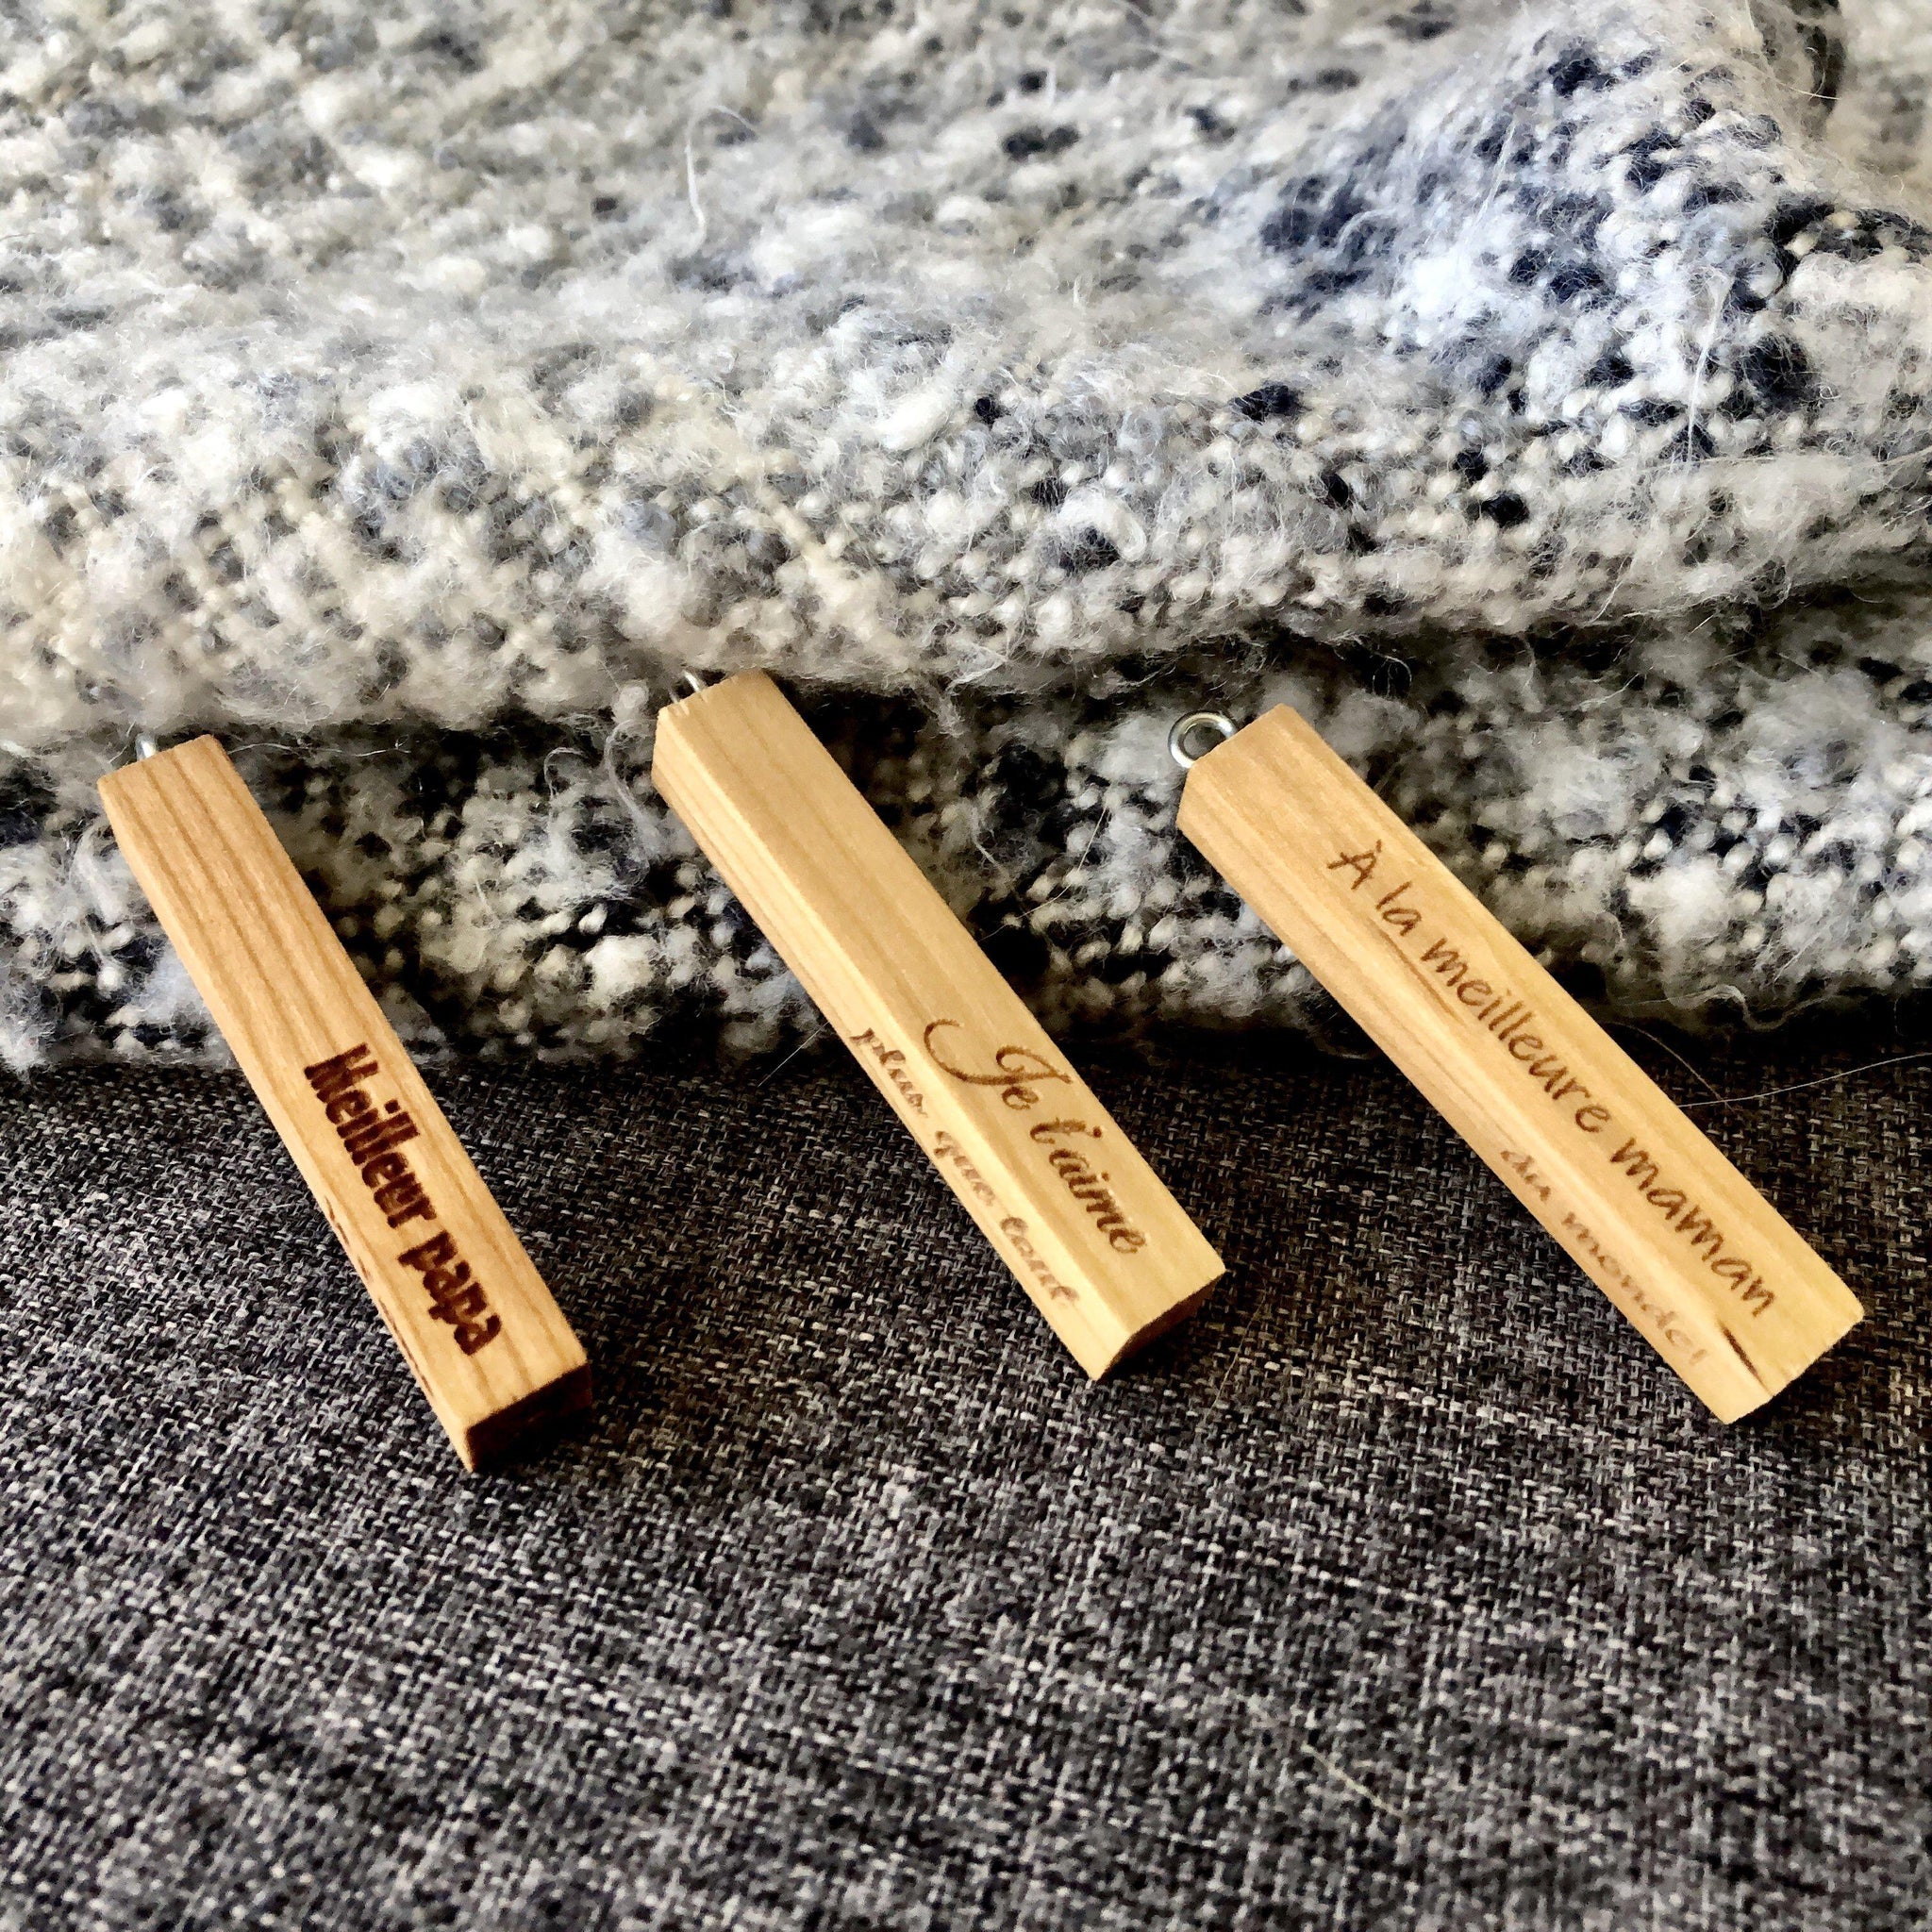 3 porte-clés en bois personnalisés minimaliste sur couverture